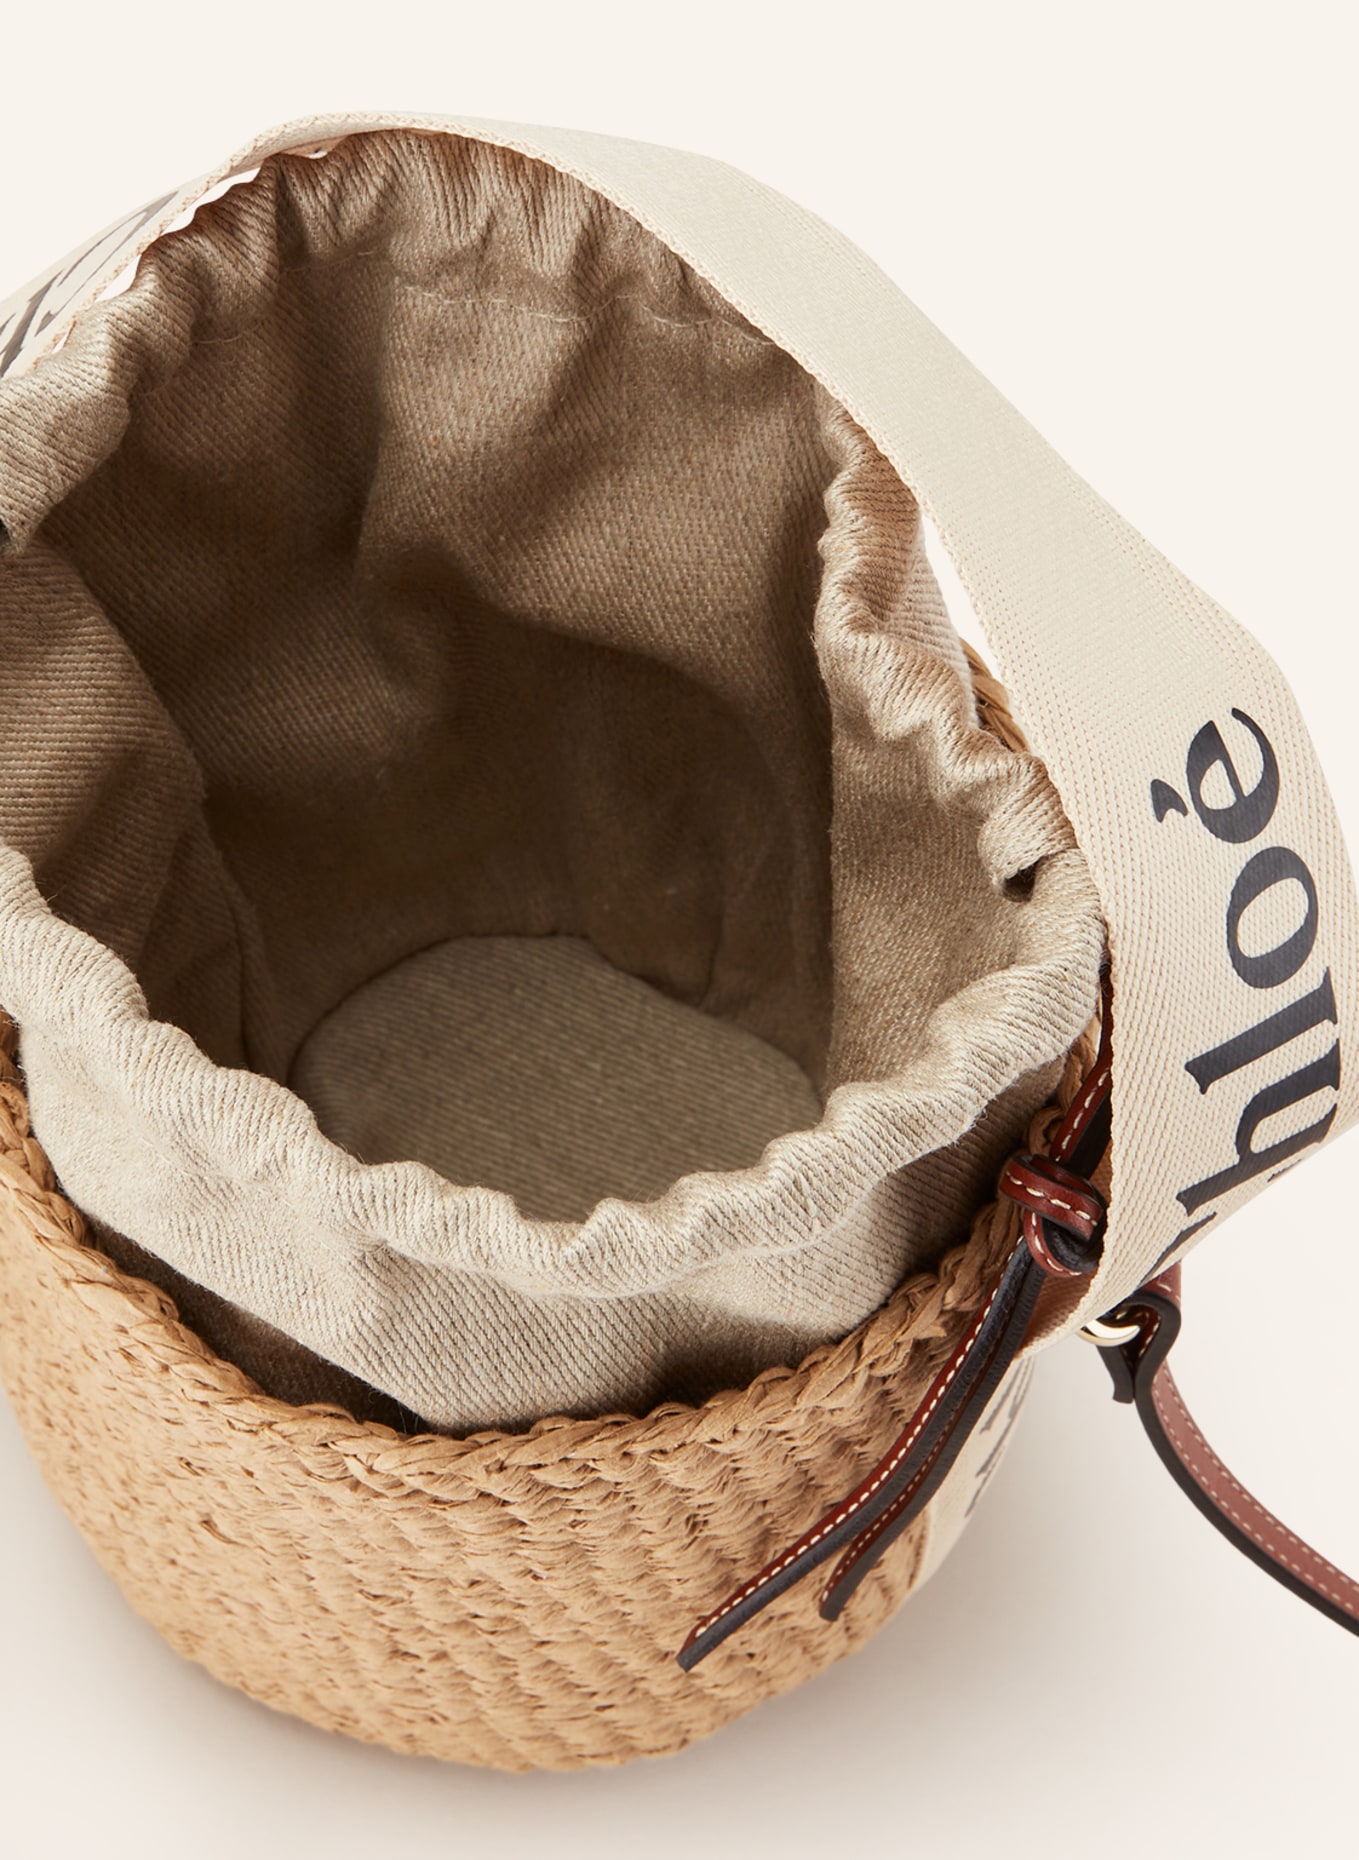 Chloé Handtasche WOODY SMALL, Farbe: BEIGE/ BRAUN/ WEISS (Bild 3)